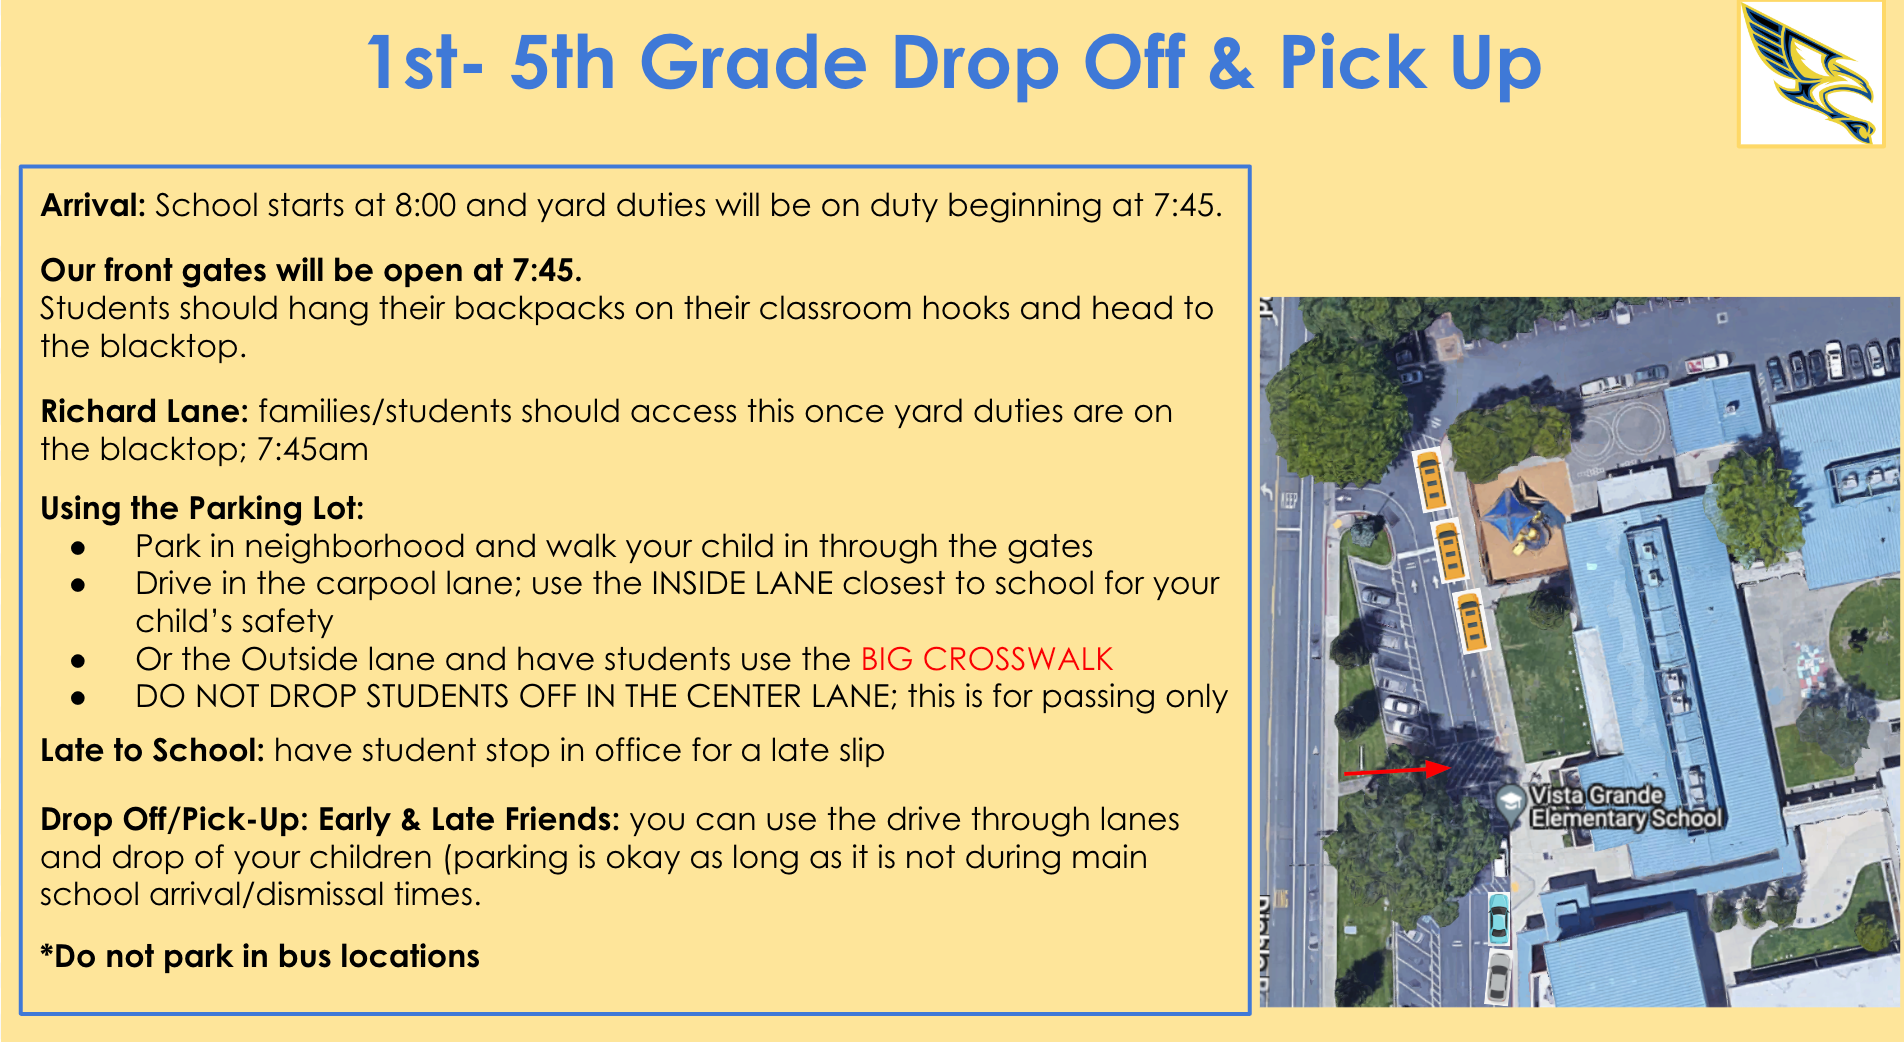 1st-5th Grade Drop Off & Pick Up Procedures